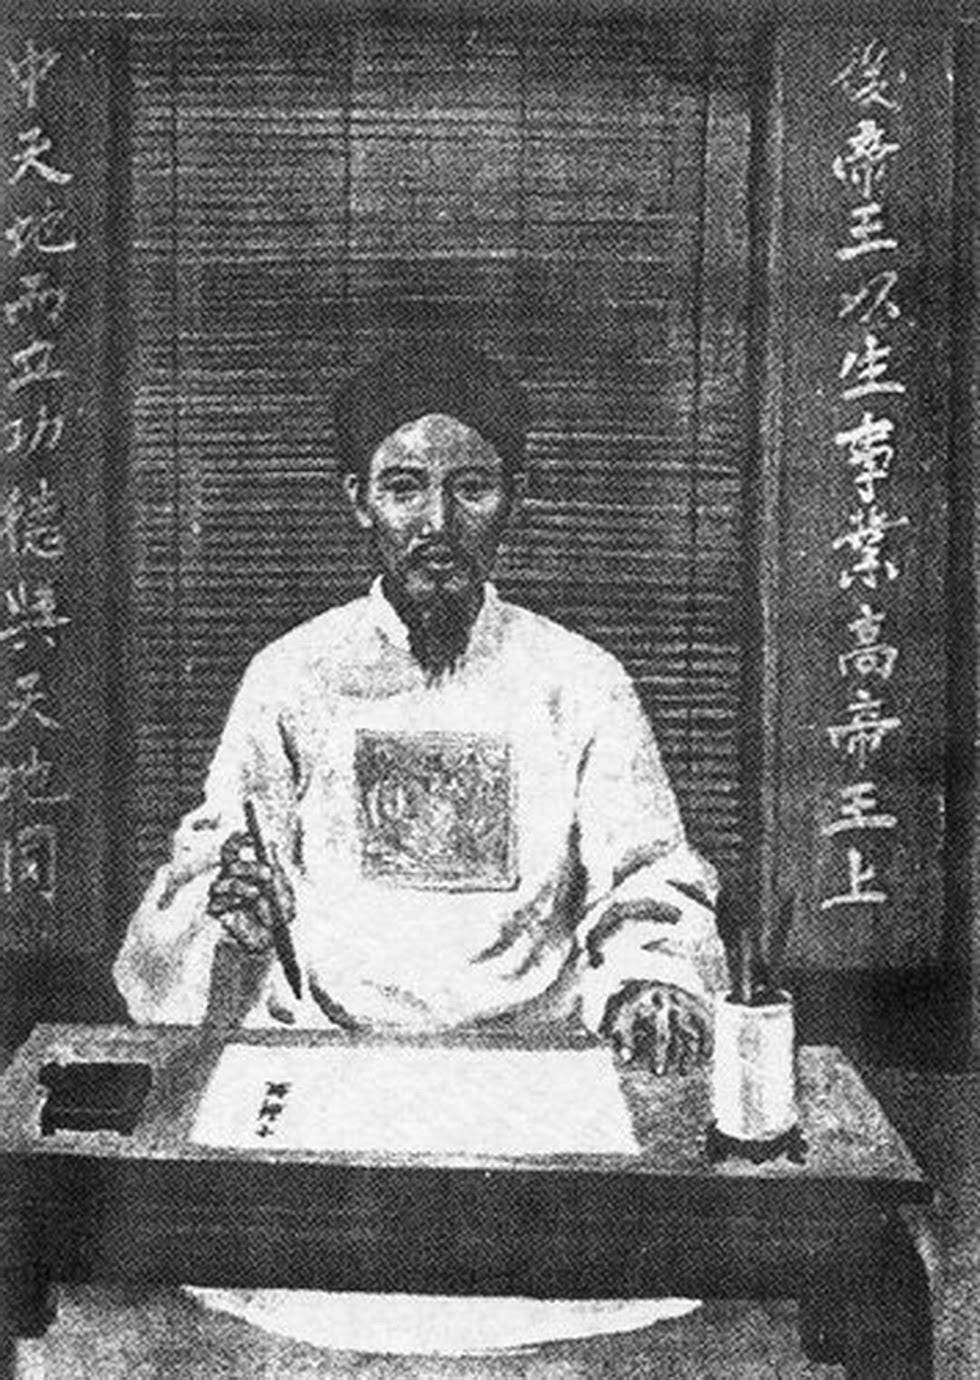 Chu Văn An được suy tôn là "bậc thầy của muôn đời". Người duy nhất được thờ trong Văn Miếu cùng với Khổng Tử. (Ảnh wikimedia)